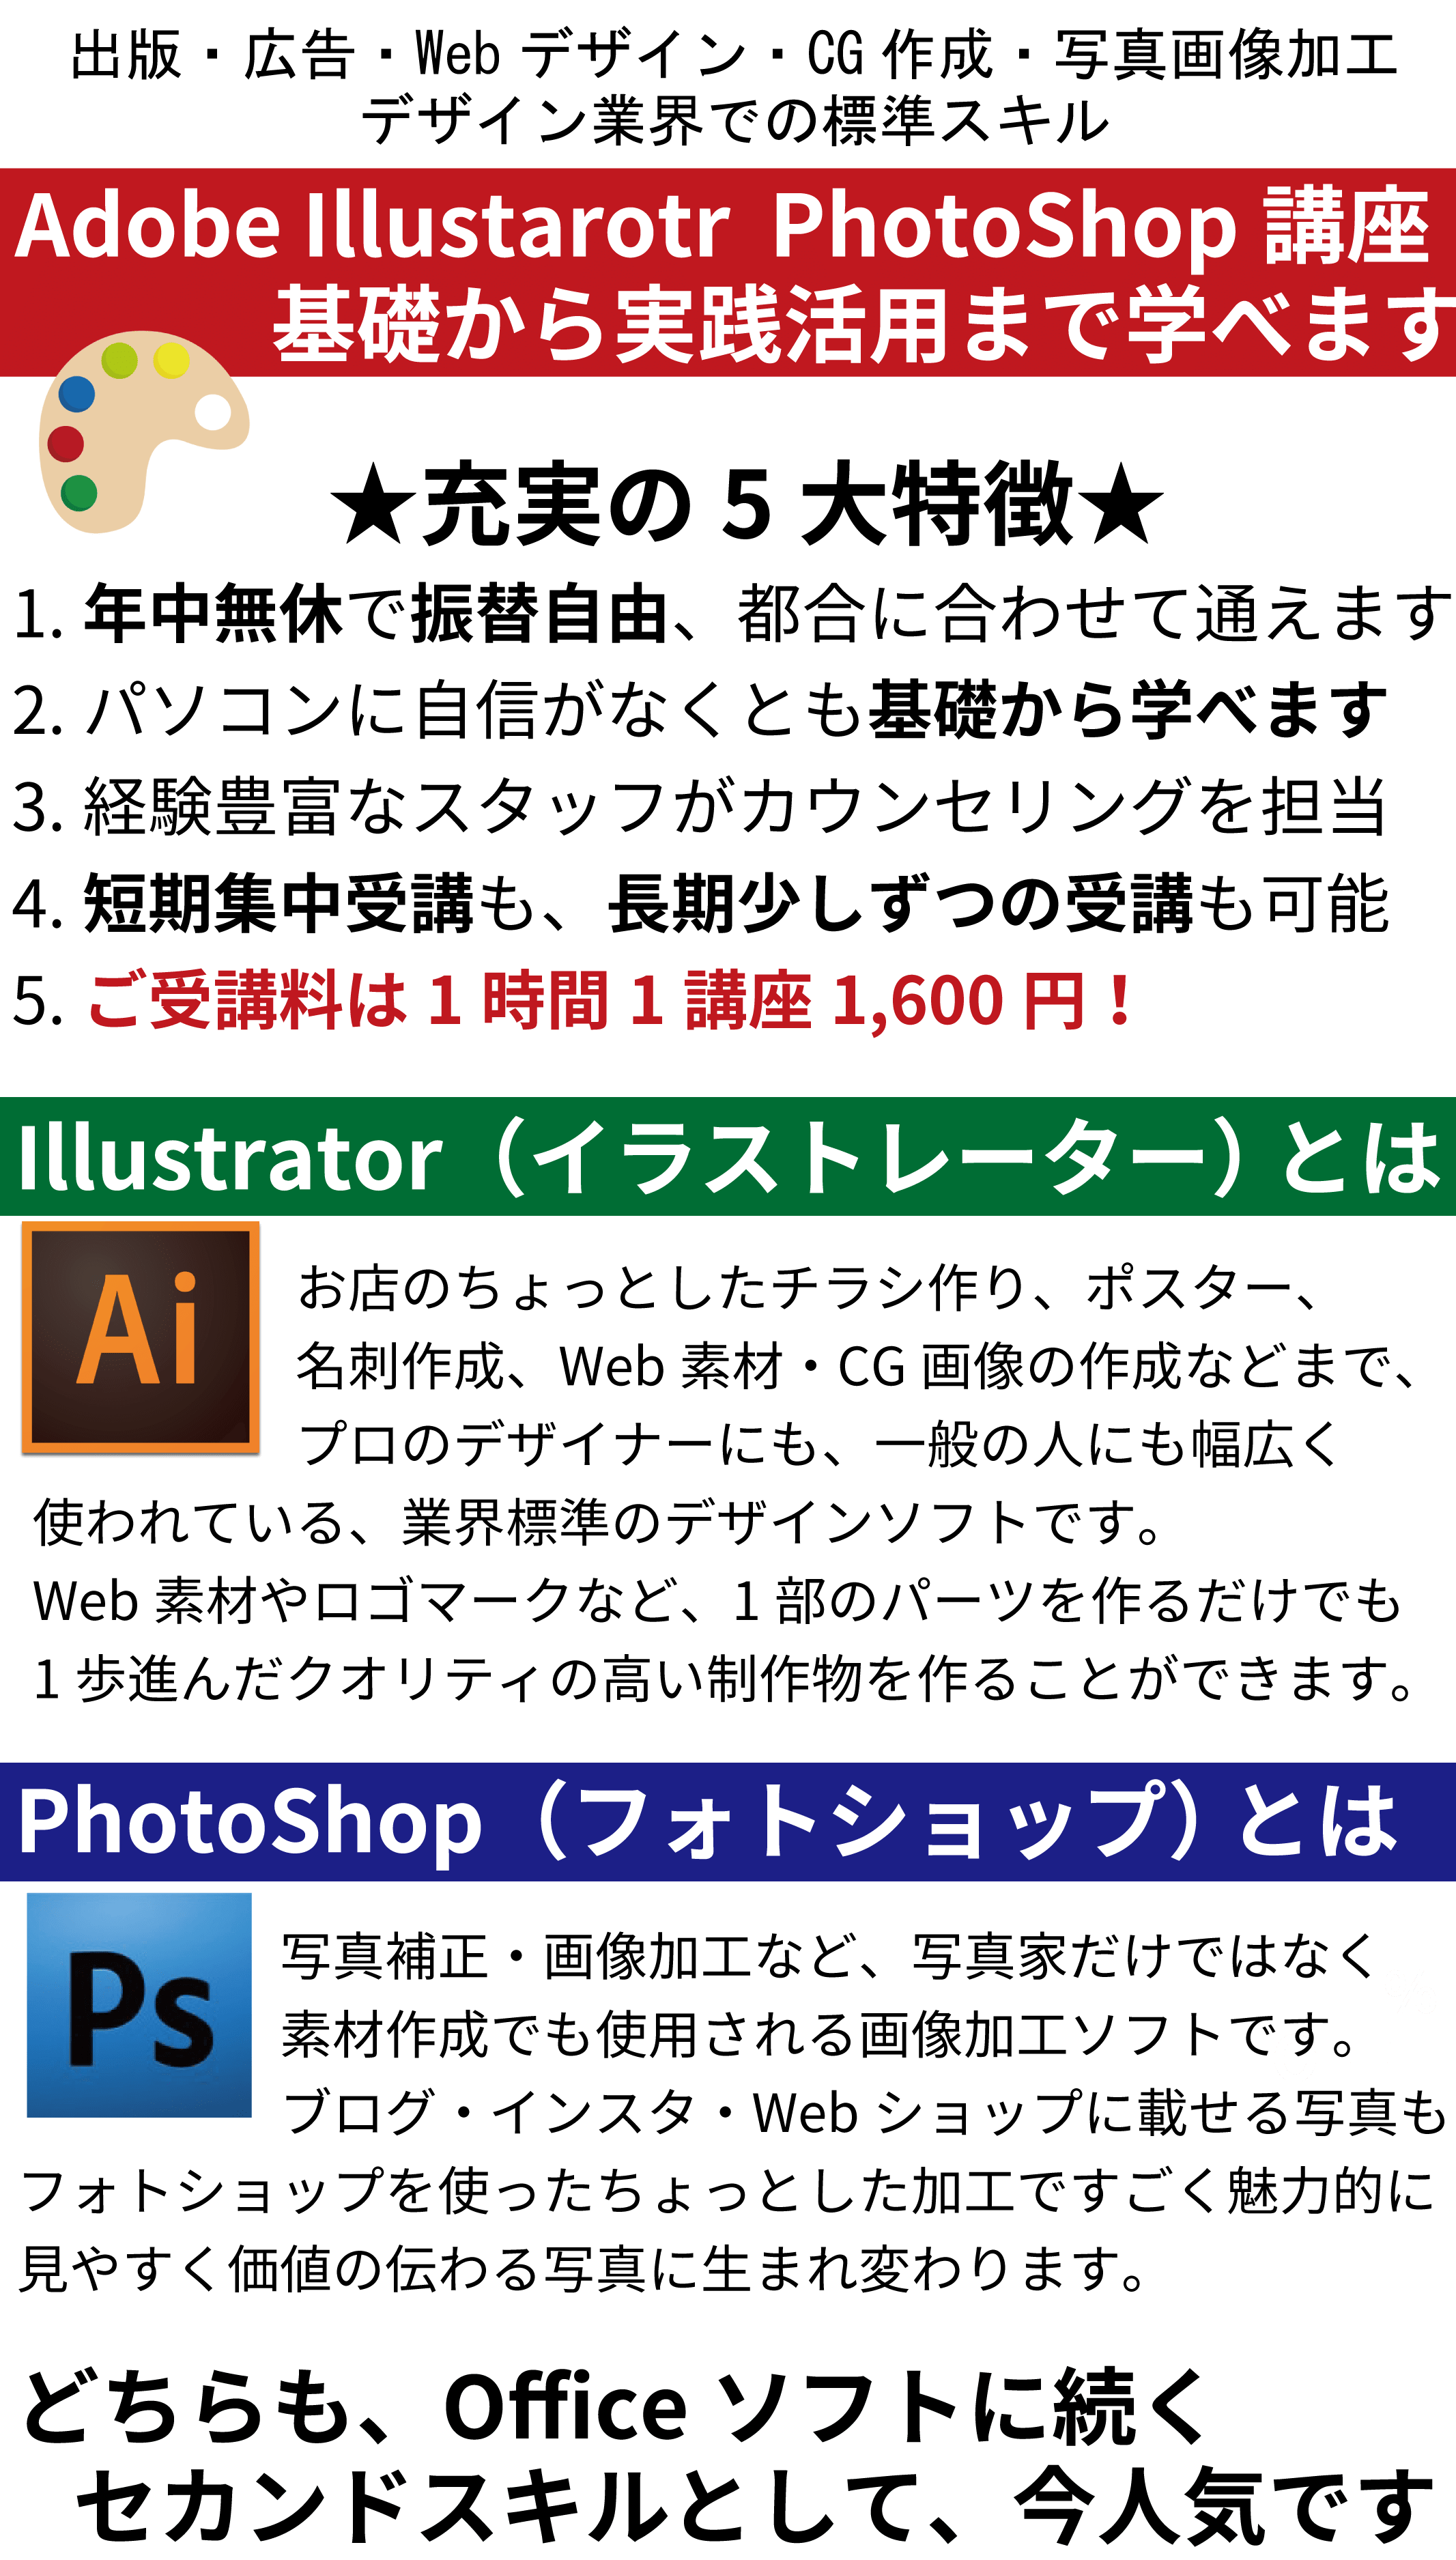 デザイン講座 Adobe Illustrator PhotoShop講座 基礎から実践活用まで学べます